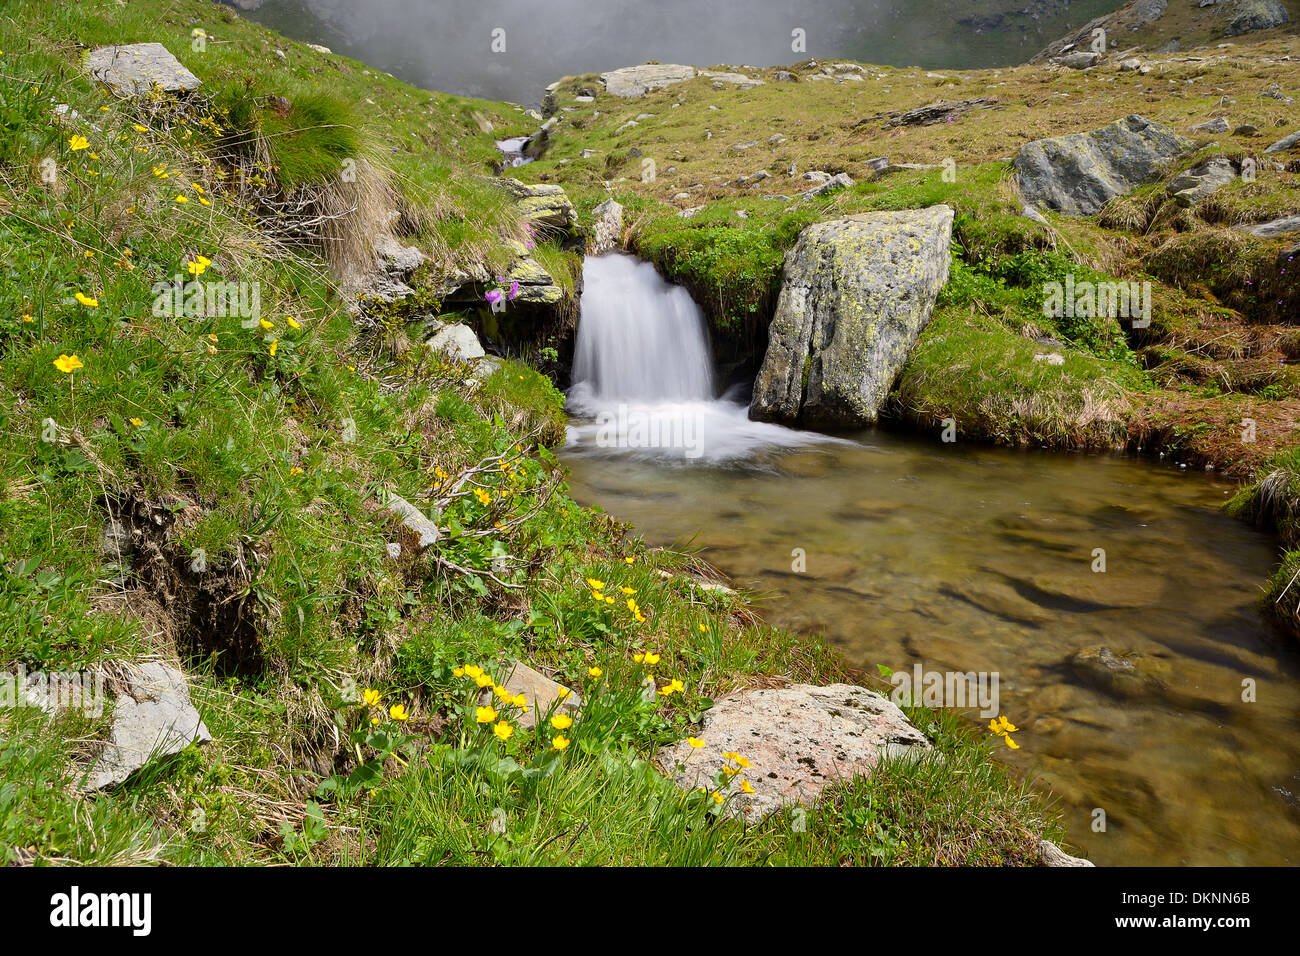 Piccolo ruscello che scorre tra rocce e lussureggianti prati verdi, presa con una lenta velocità di otturatore. Posizione: Alpi occidentali, Piemonte, Italia Foto Stock